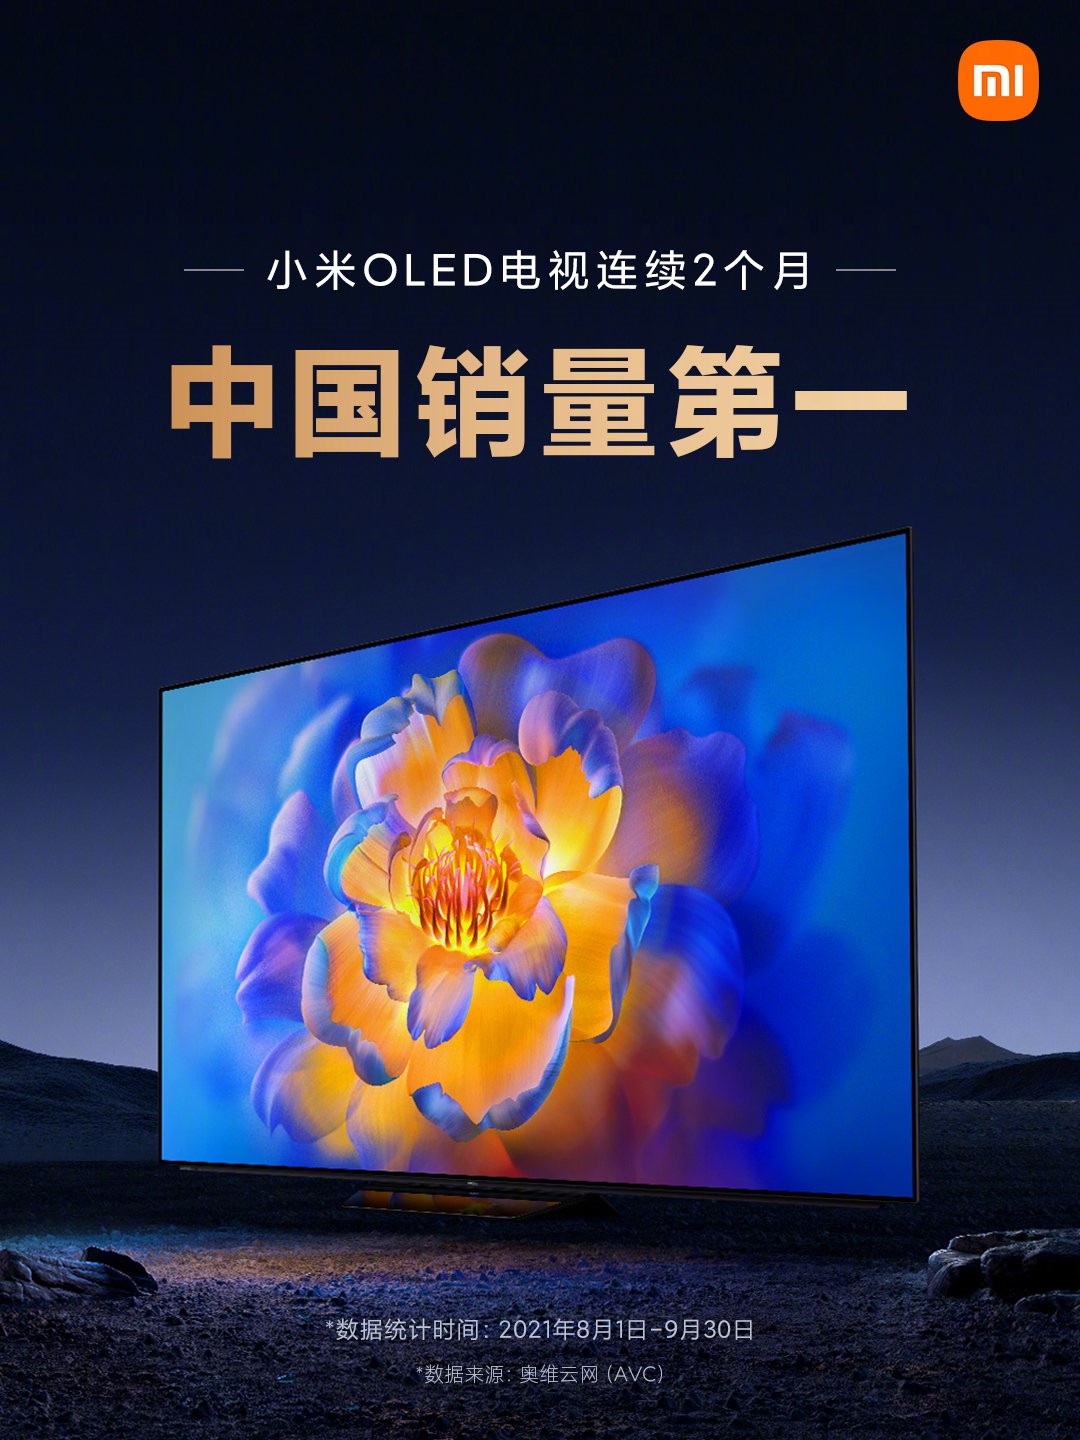 小米OLED电视受承认 连绝两个月取得中国销量第1